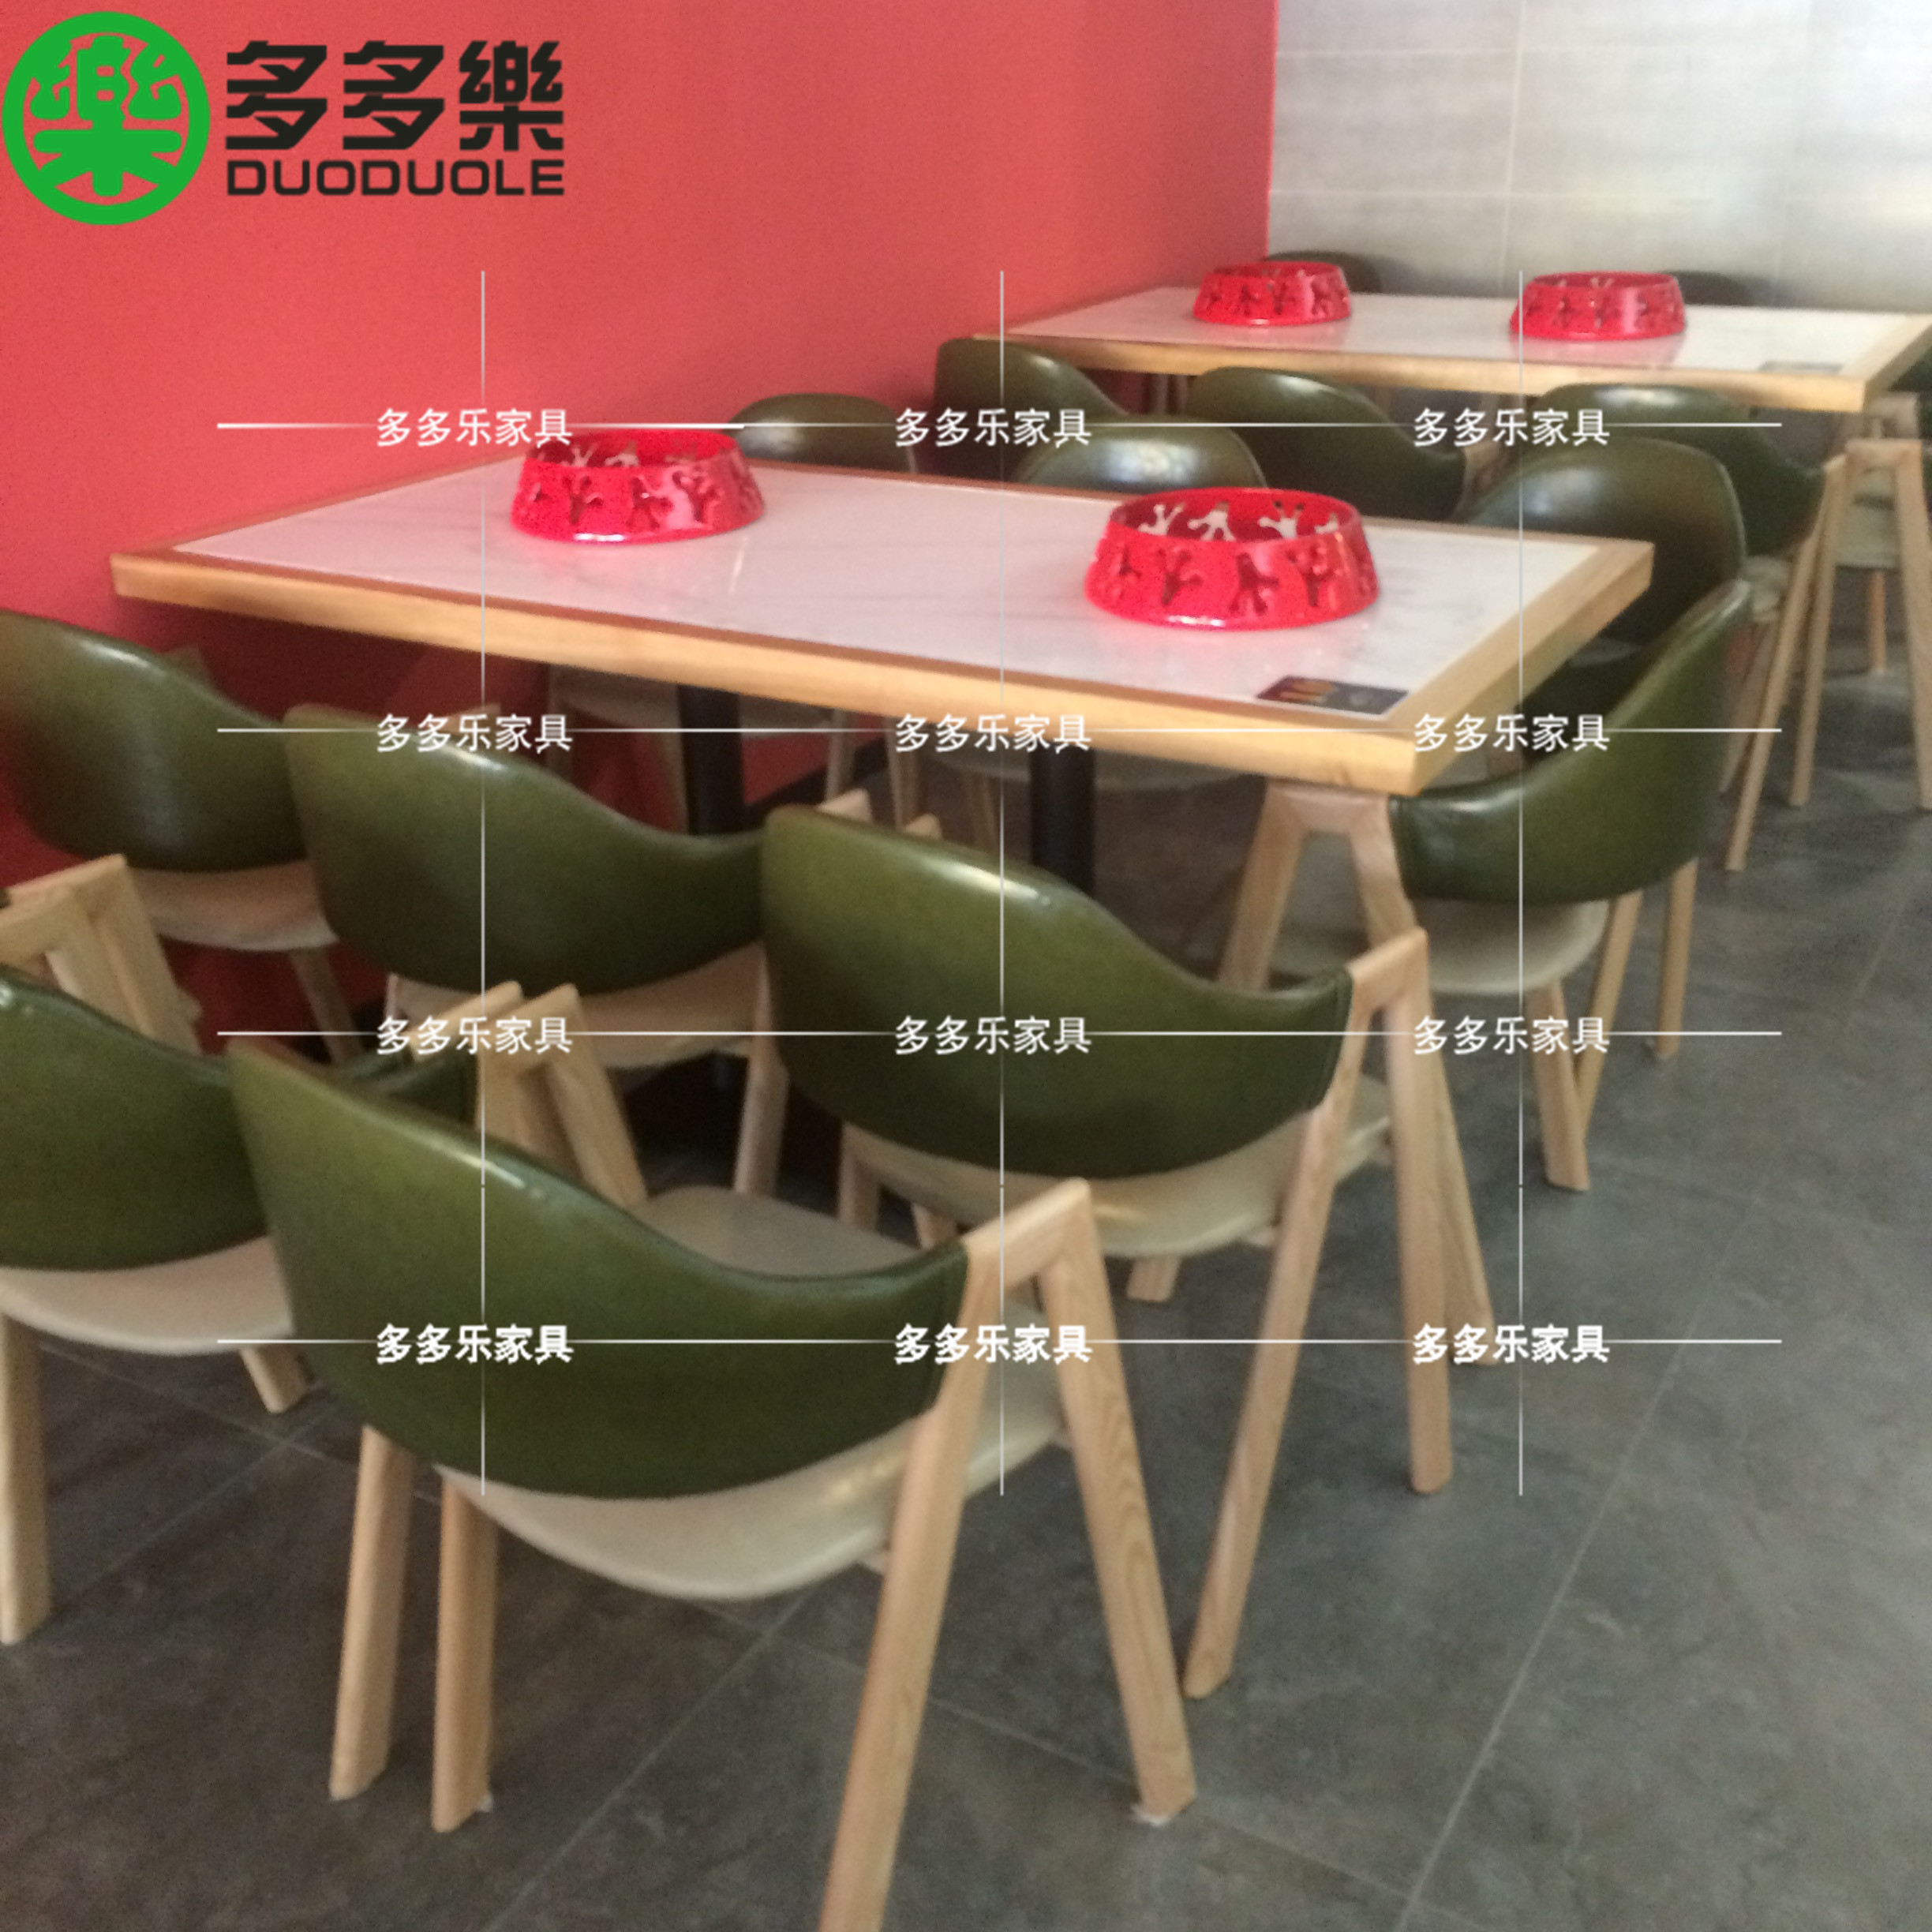 现代简约实木餐桌椅供应 新中式餐饮家具定做厂家3